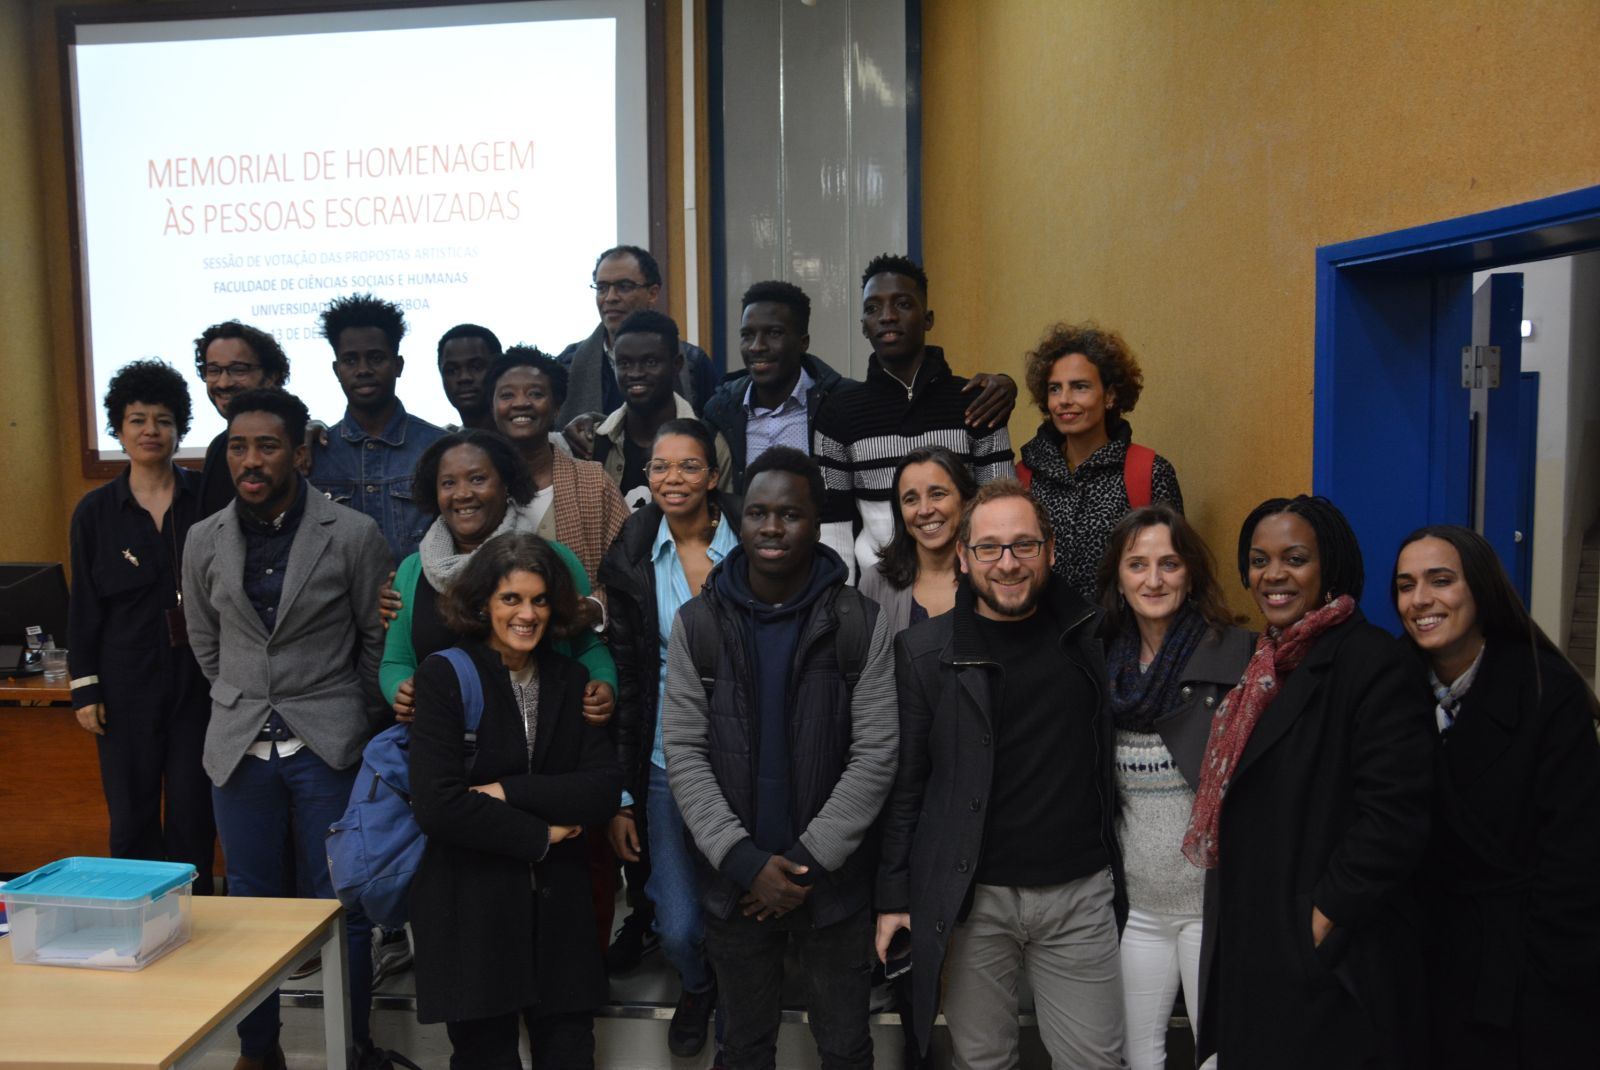 Sessão de apresentação das propostas e votação Faculdade de Ciências Sociais e Humanas da Universidade Nova de Lisboa, 13/12/2019. @ Djass - Associação de Afrodescendentes